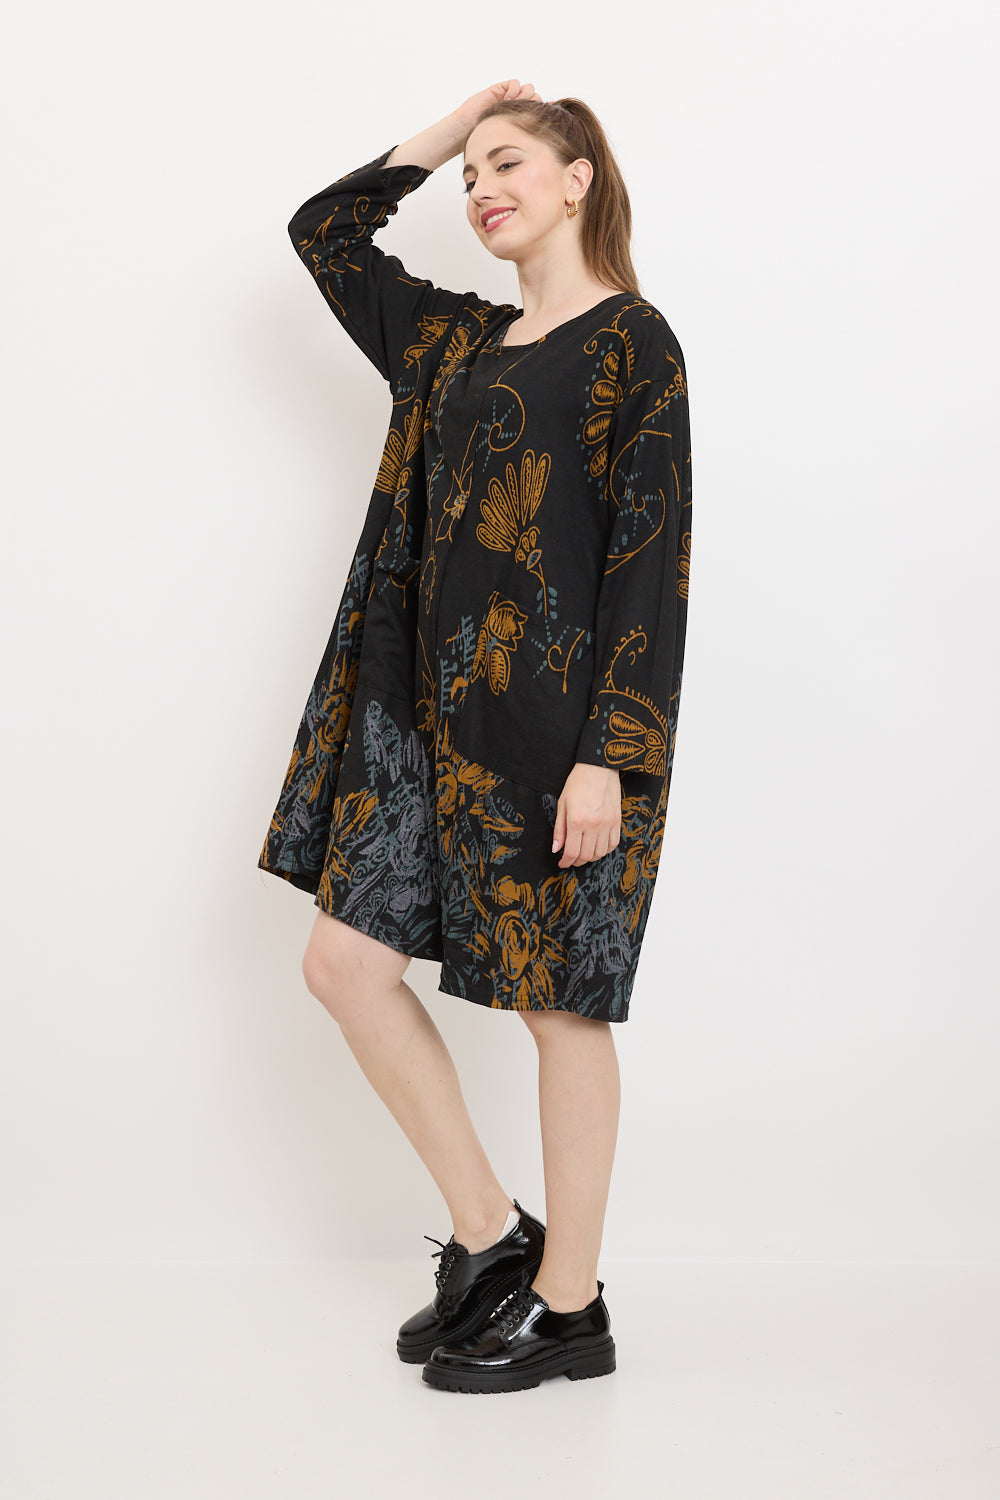 Wildflower patterned dress